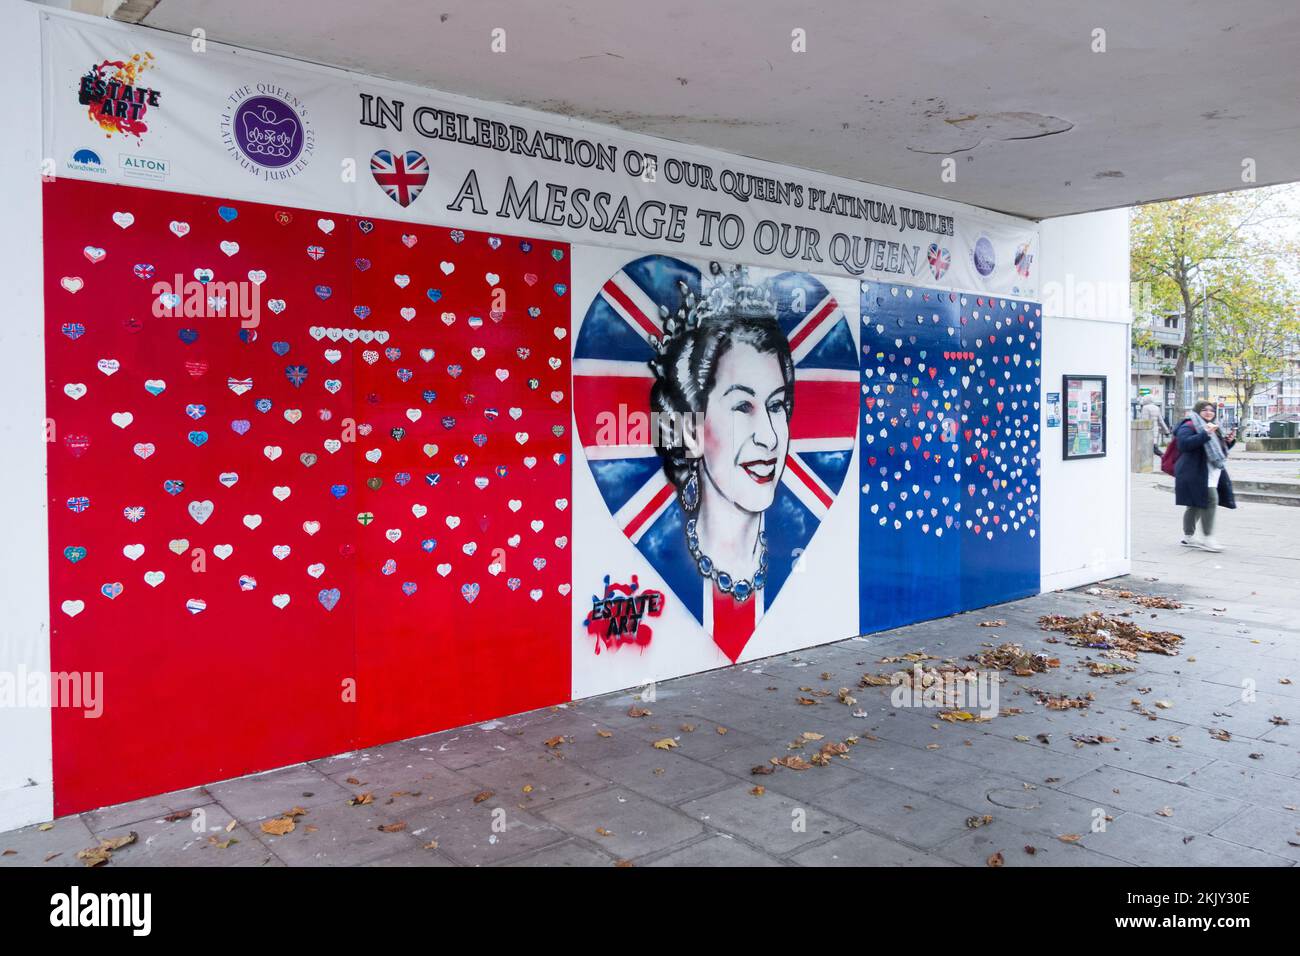 Un message à notre Reine - en célébration de l'art de rue de notre Dame Platinum Jubilee à Roehampton, Londres, SW15, Angleterre, Royaume-Uni Banque D'Images